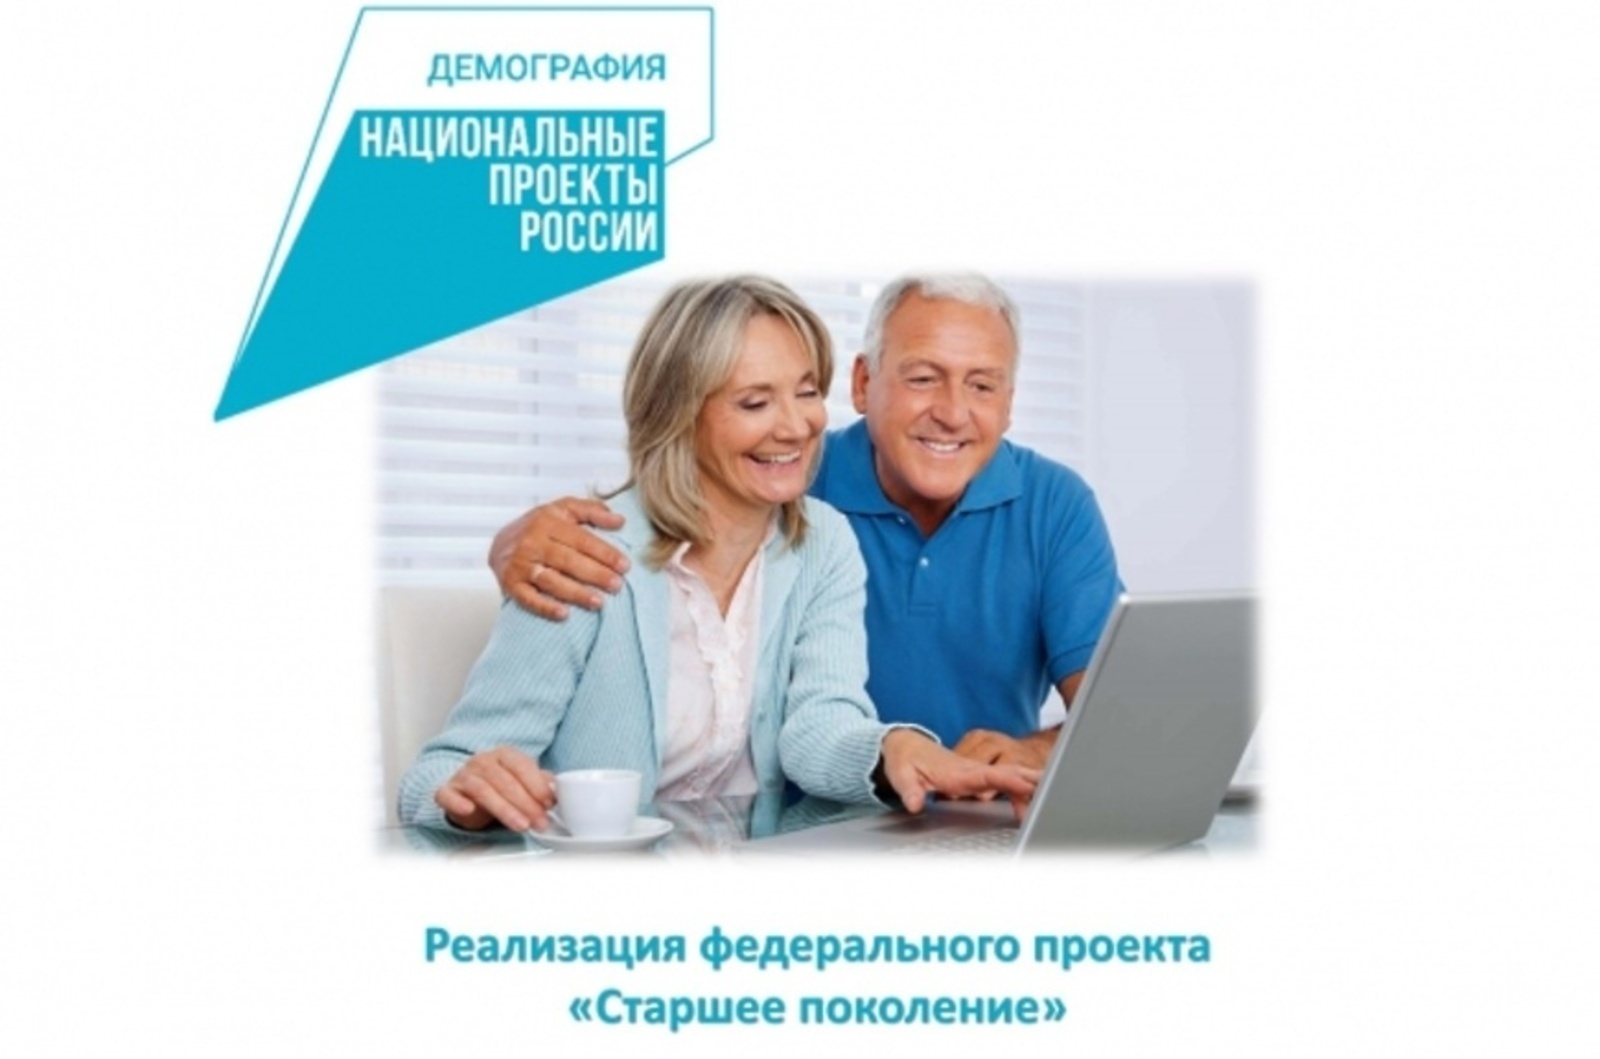 В рамках нацпроекта свыше 1200 пенсионеров Башкортостана получили денежные сертификаты на оздоровление, спорт и учебу